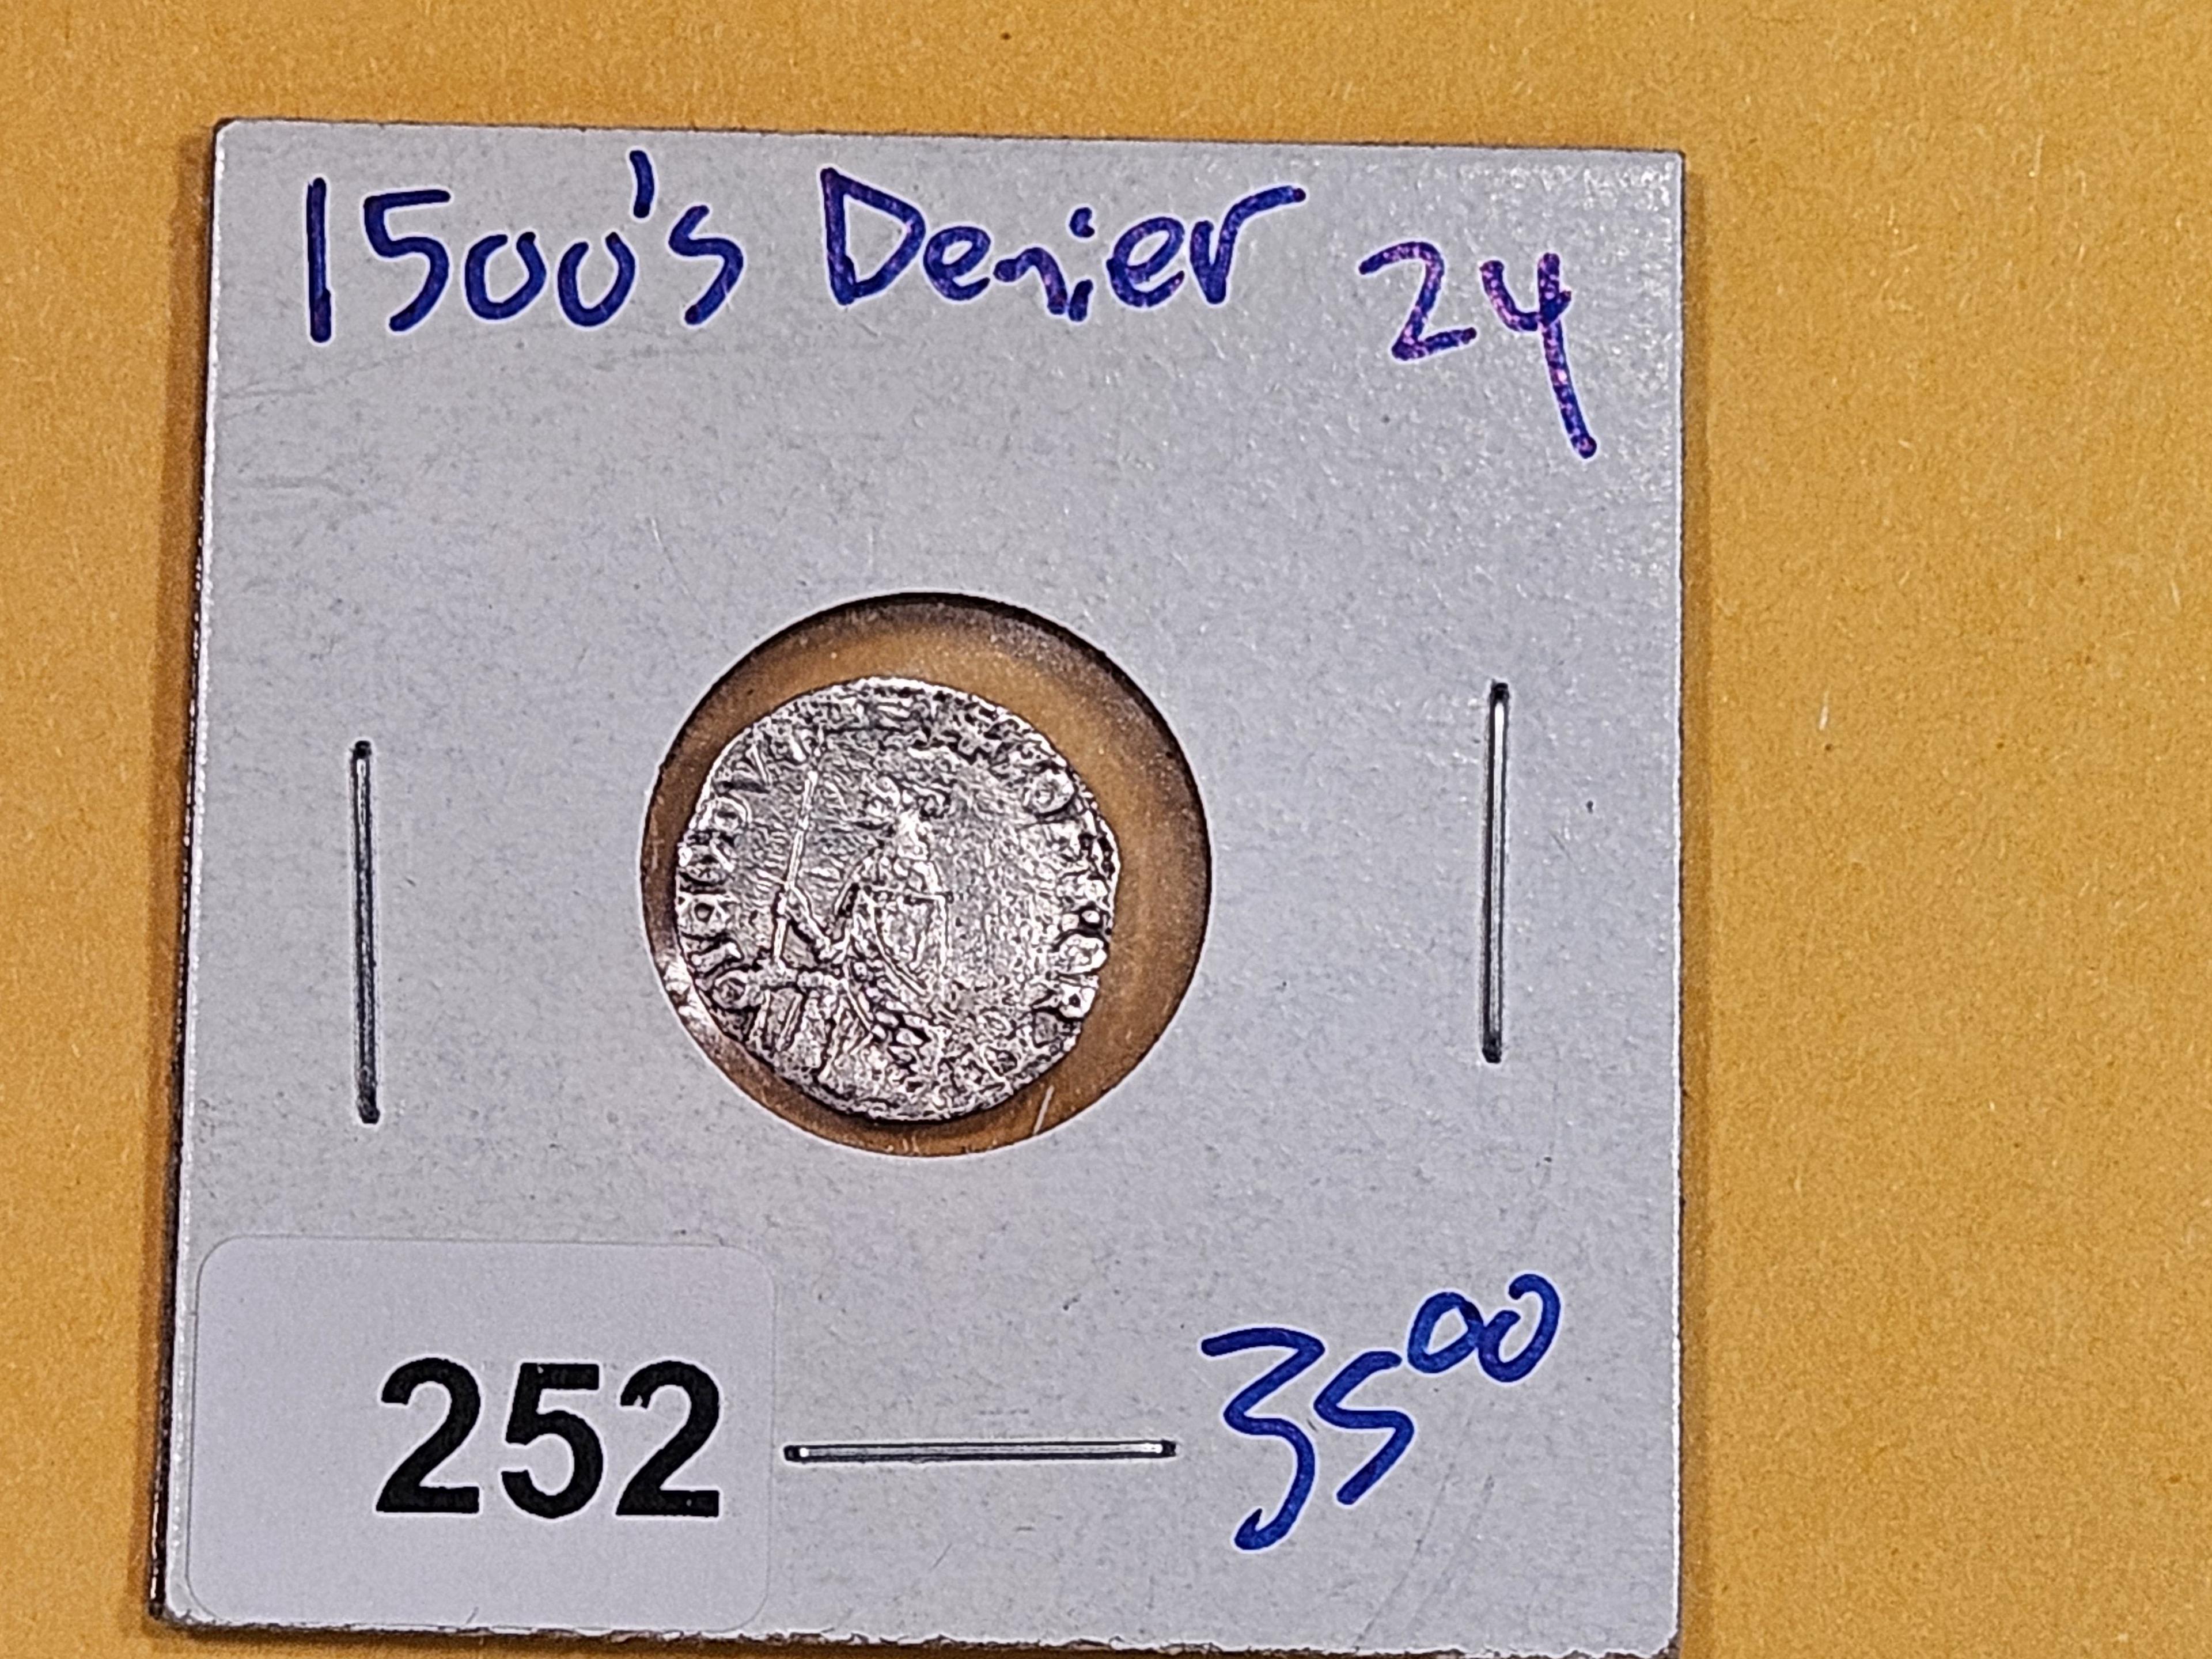 1500's silver denier